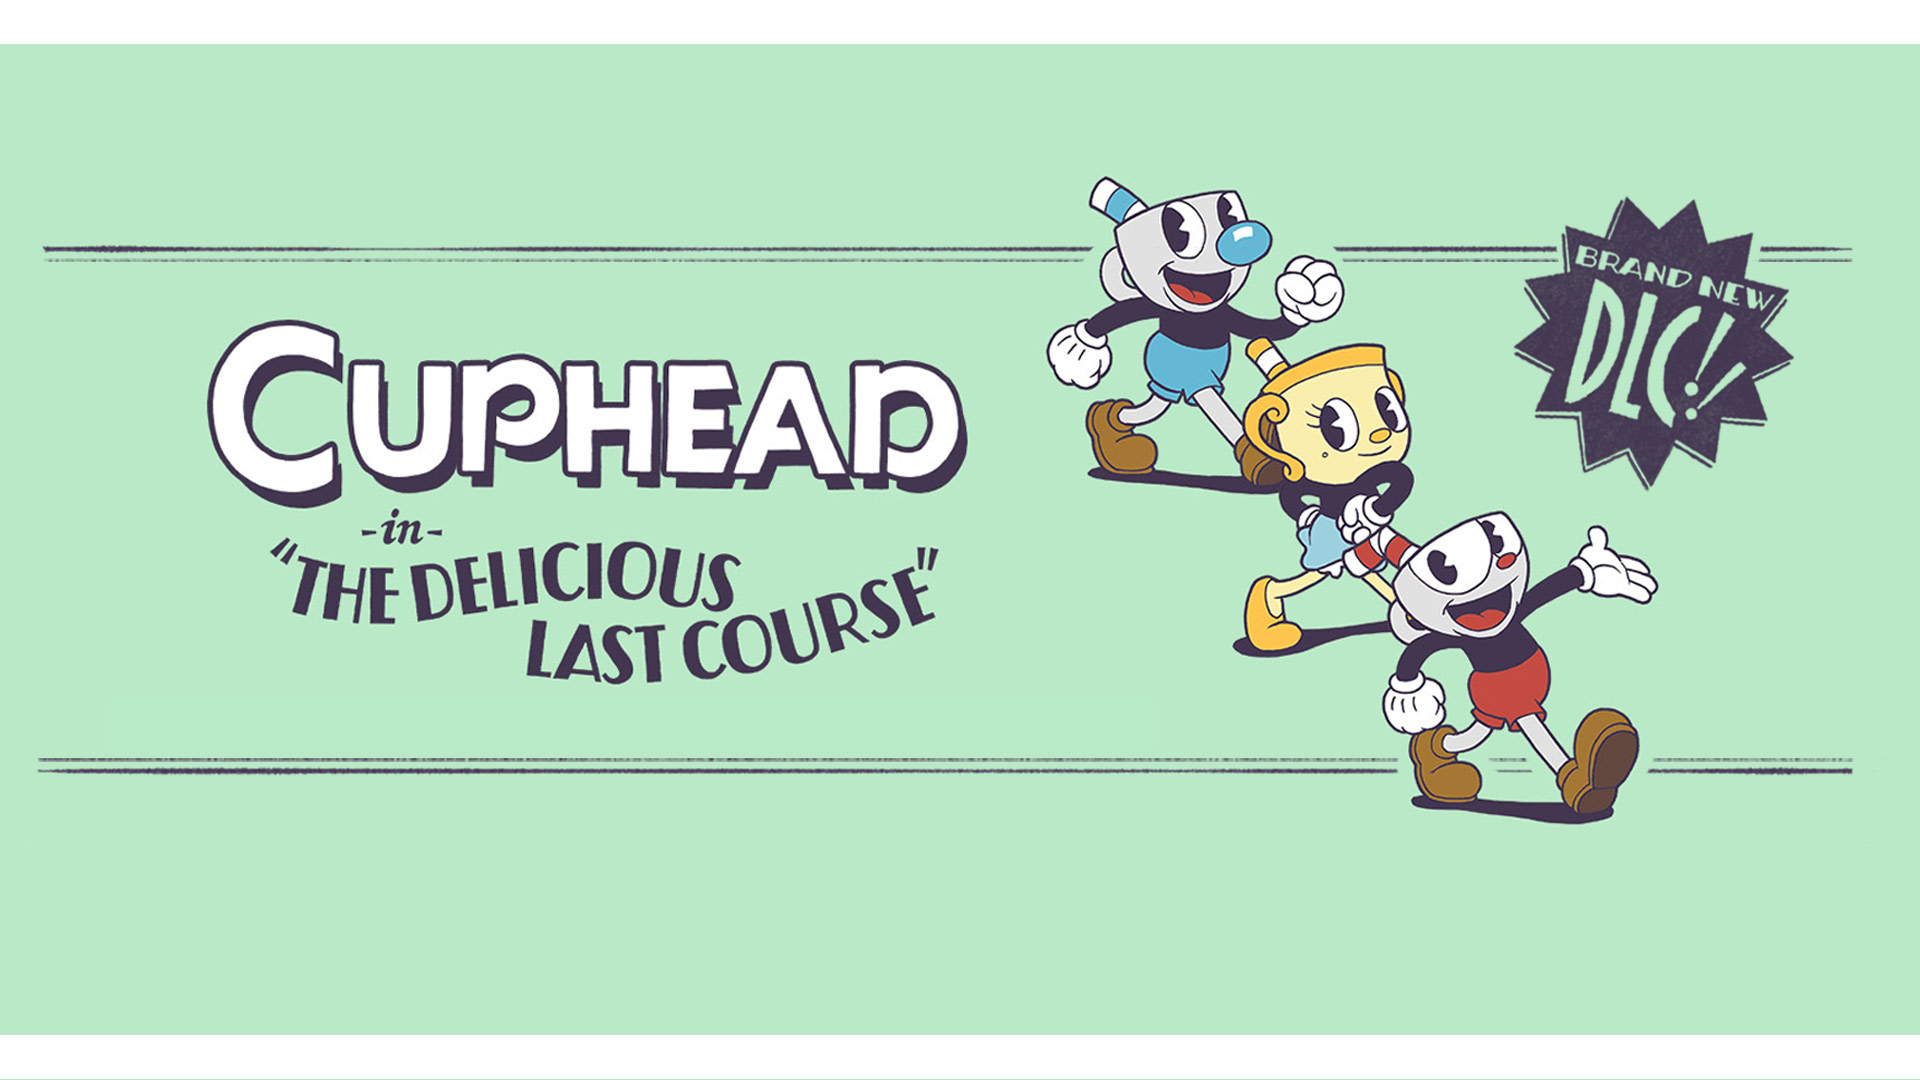 Cuphead en The delicious last course: ¡un nuevo DLC! 3 personajes de Cuphead posando